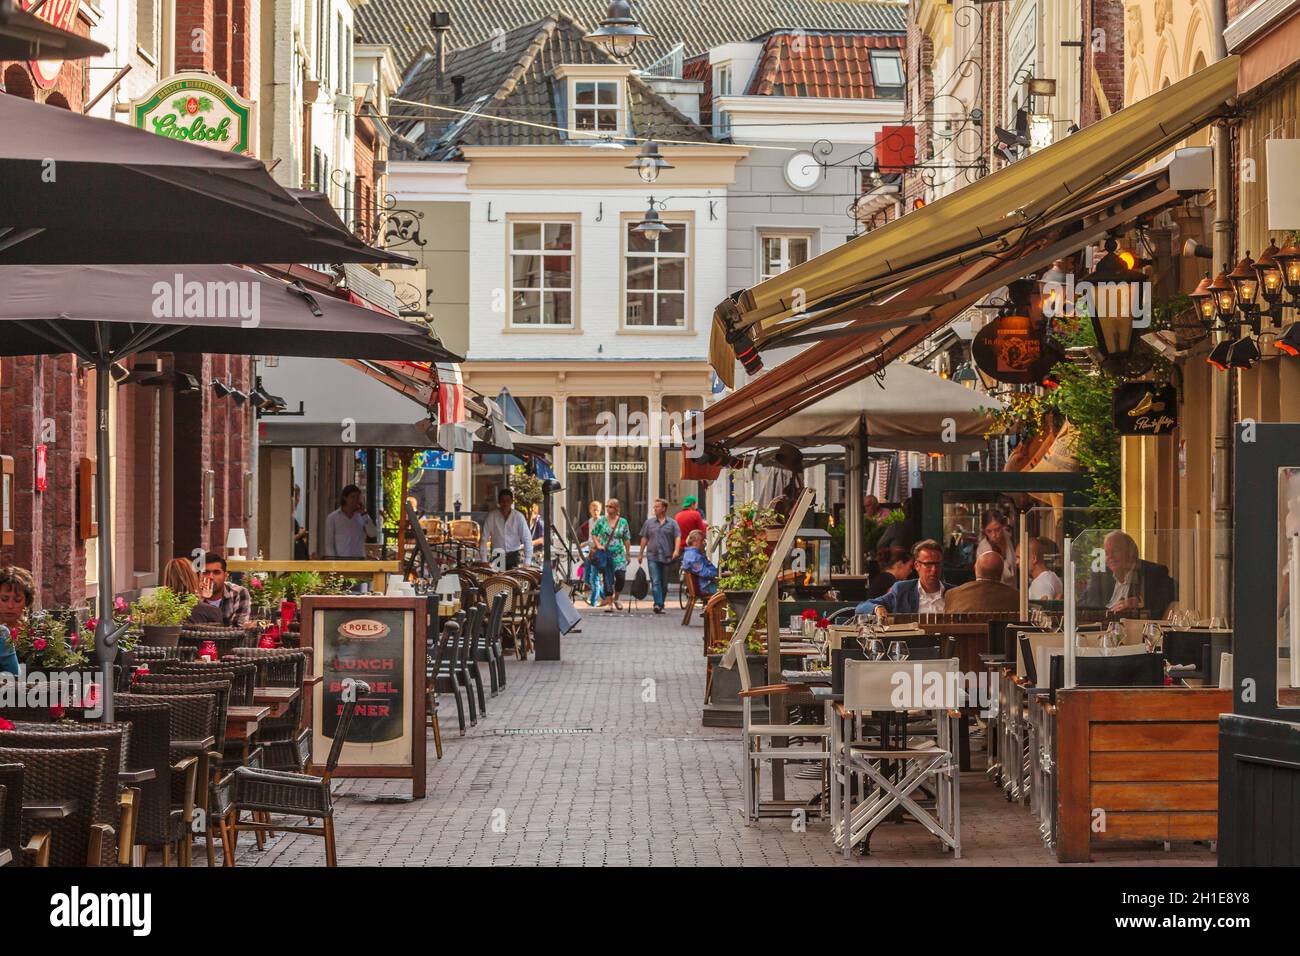 DEN Bosch - AUGUST 12: Restaurantterrassen in einer kleinen Gasse im historischen Stadtzentrum der niederländischen Stadt Den Bosch. Stockfoto